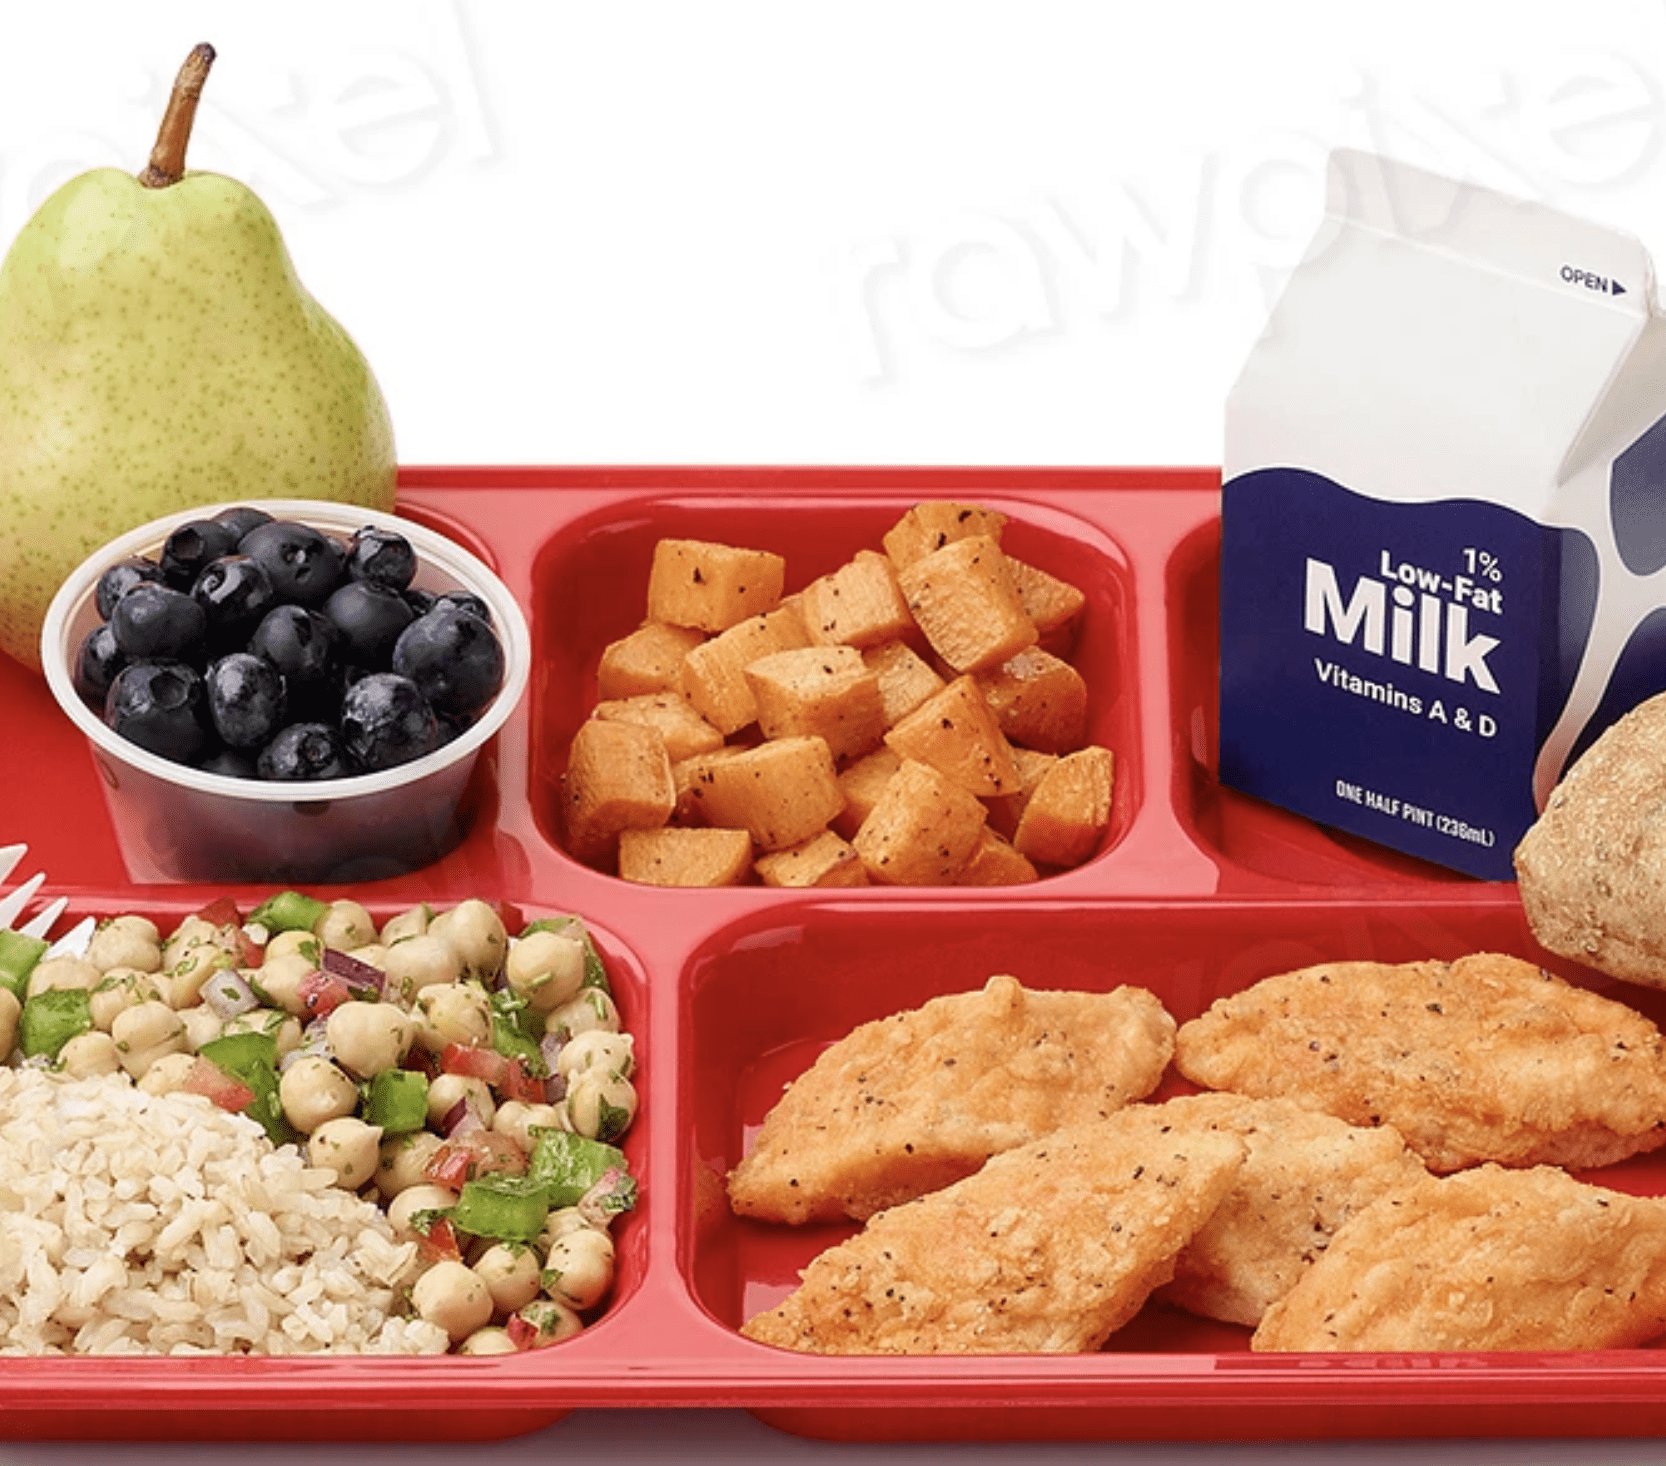 A school lunch tray